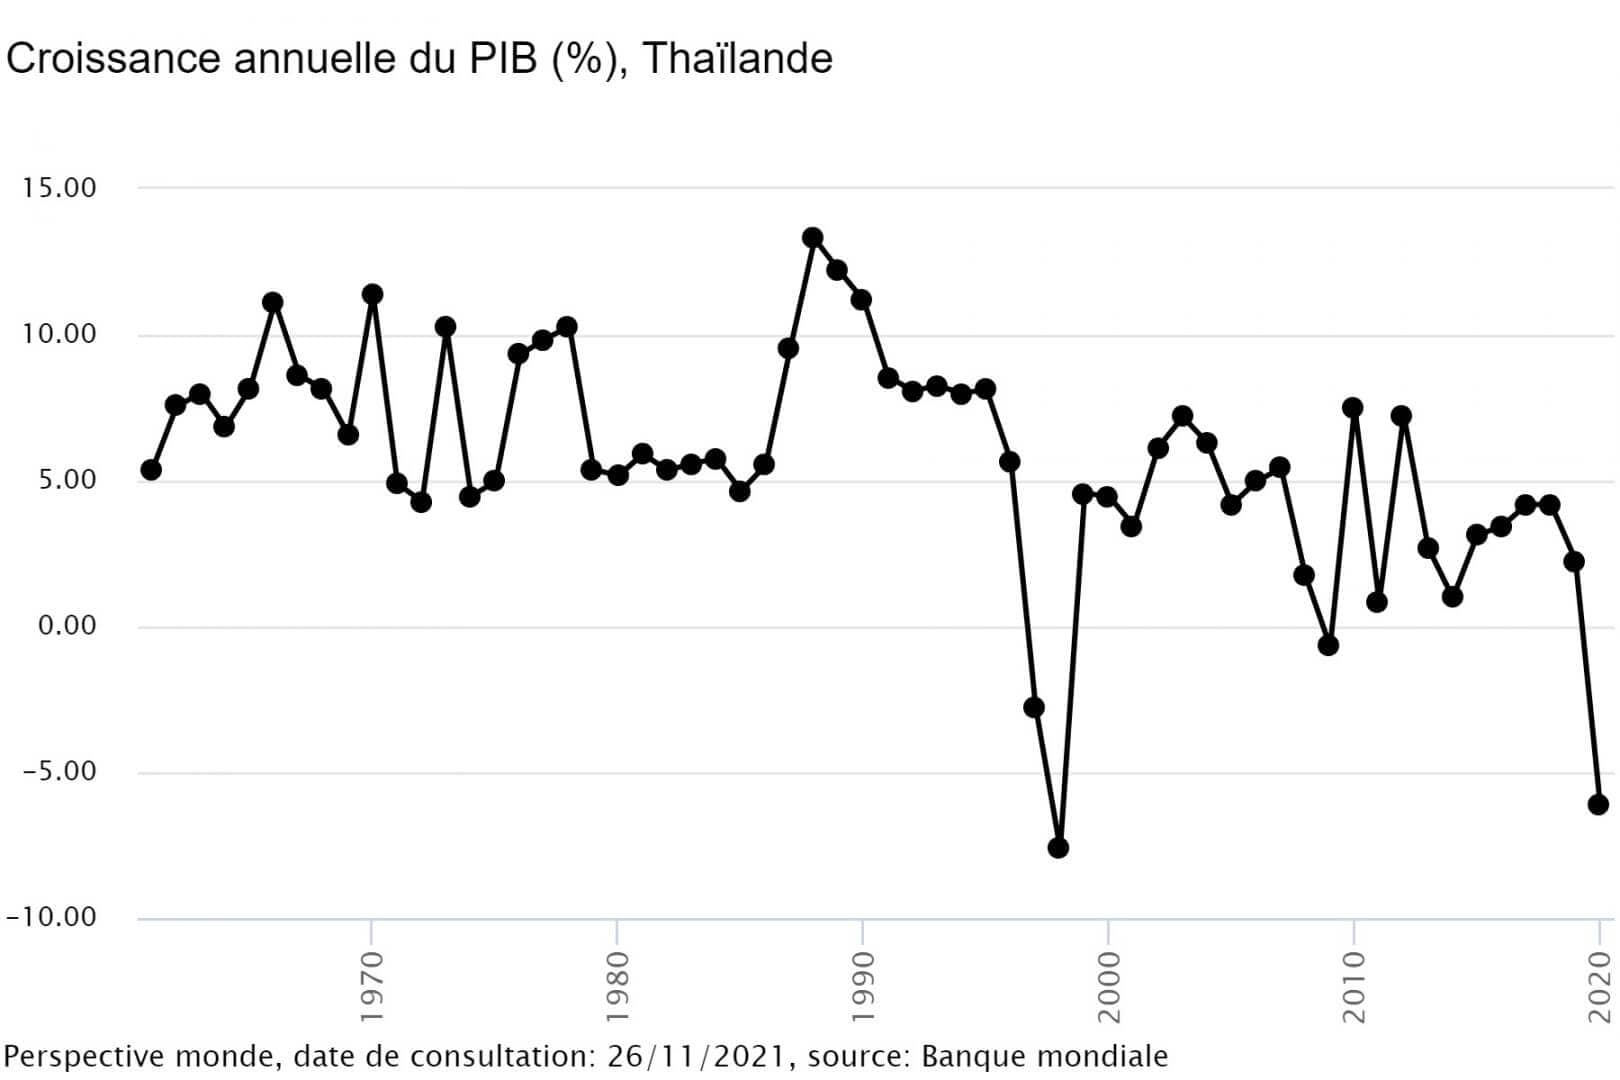 Croissance en % du PIB en Thaïlande. Le PIB est à son plus bas, depuis 1998. Cela est dû à la pandémie mondiale et à la fermeture des frontières qui ont empêché le tourisme. 